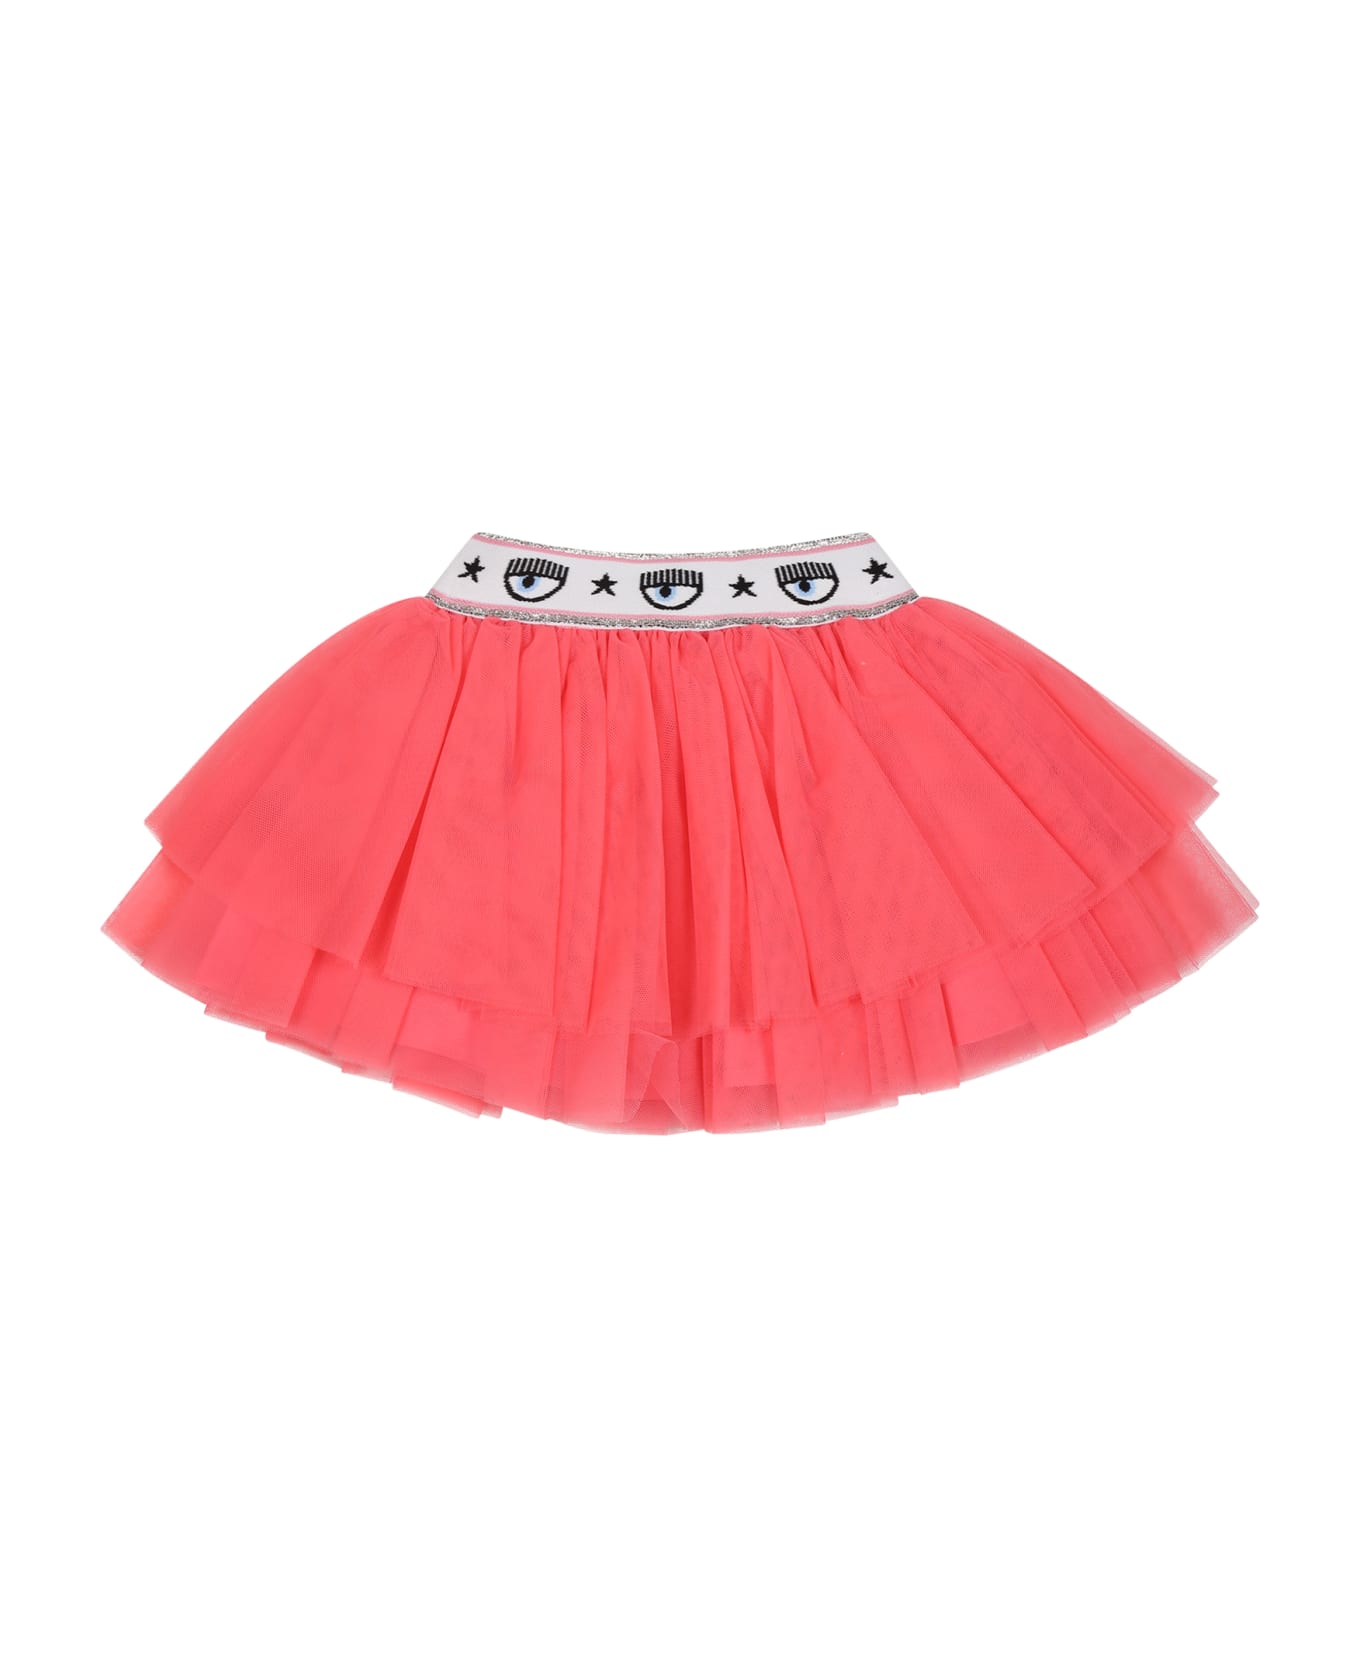 Chiara Ferragni Pink Skirt For Baby Girl With Eyestar - Pink